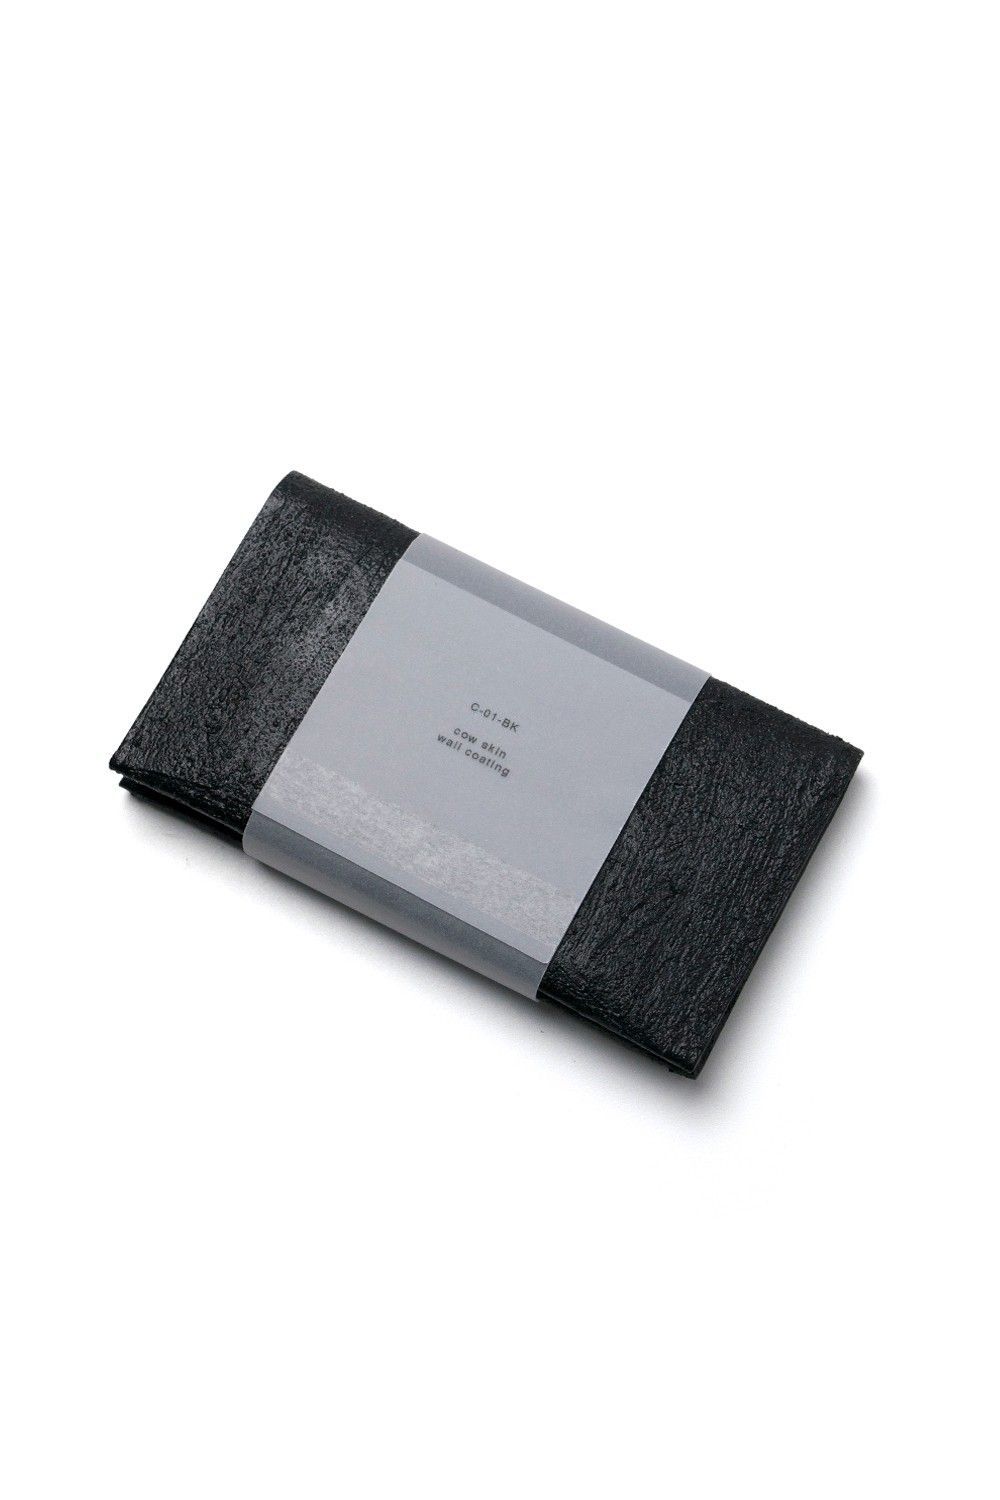 KAGARI YUSUKE - カードケース(名刺入れ) [黒い壁] / C01-bk | BONITA 